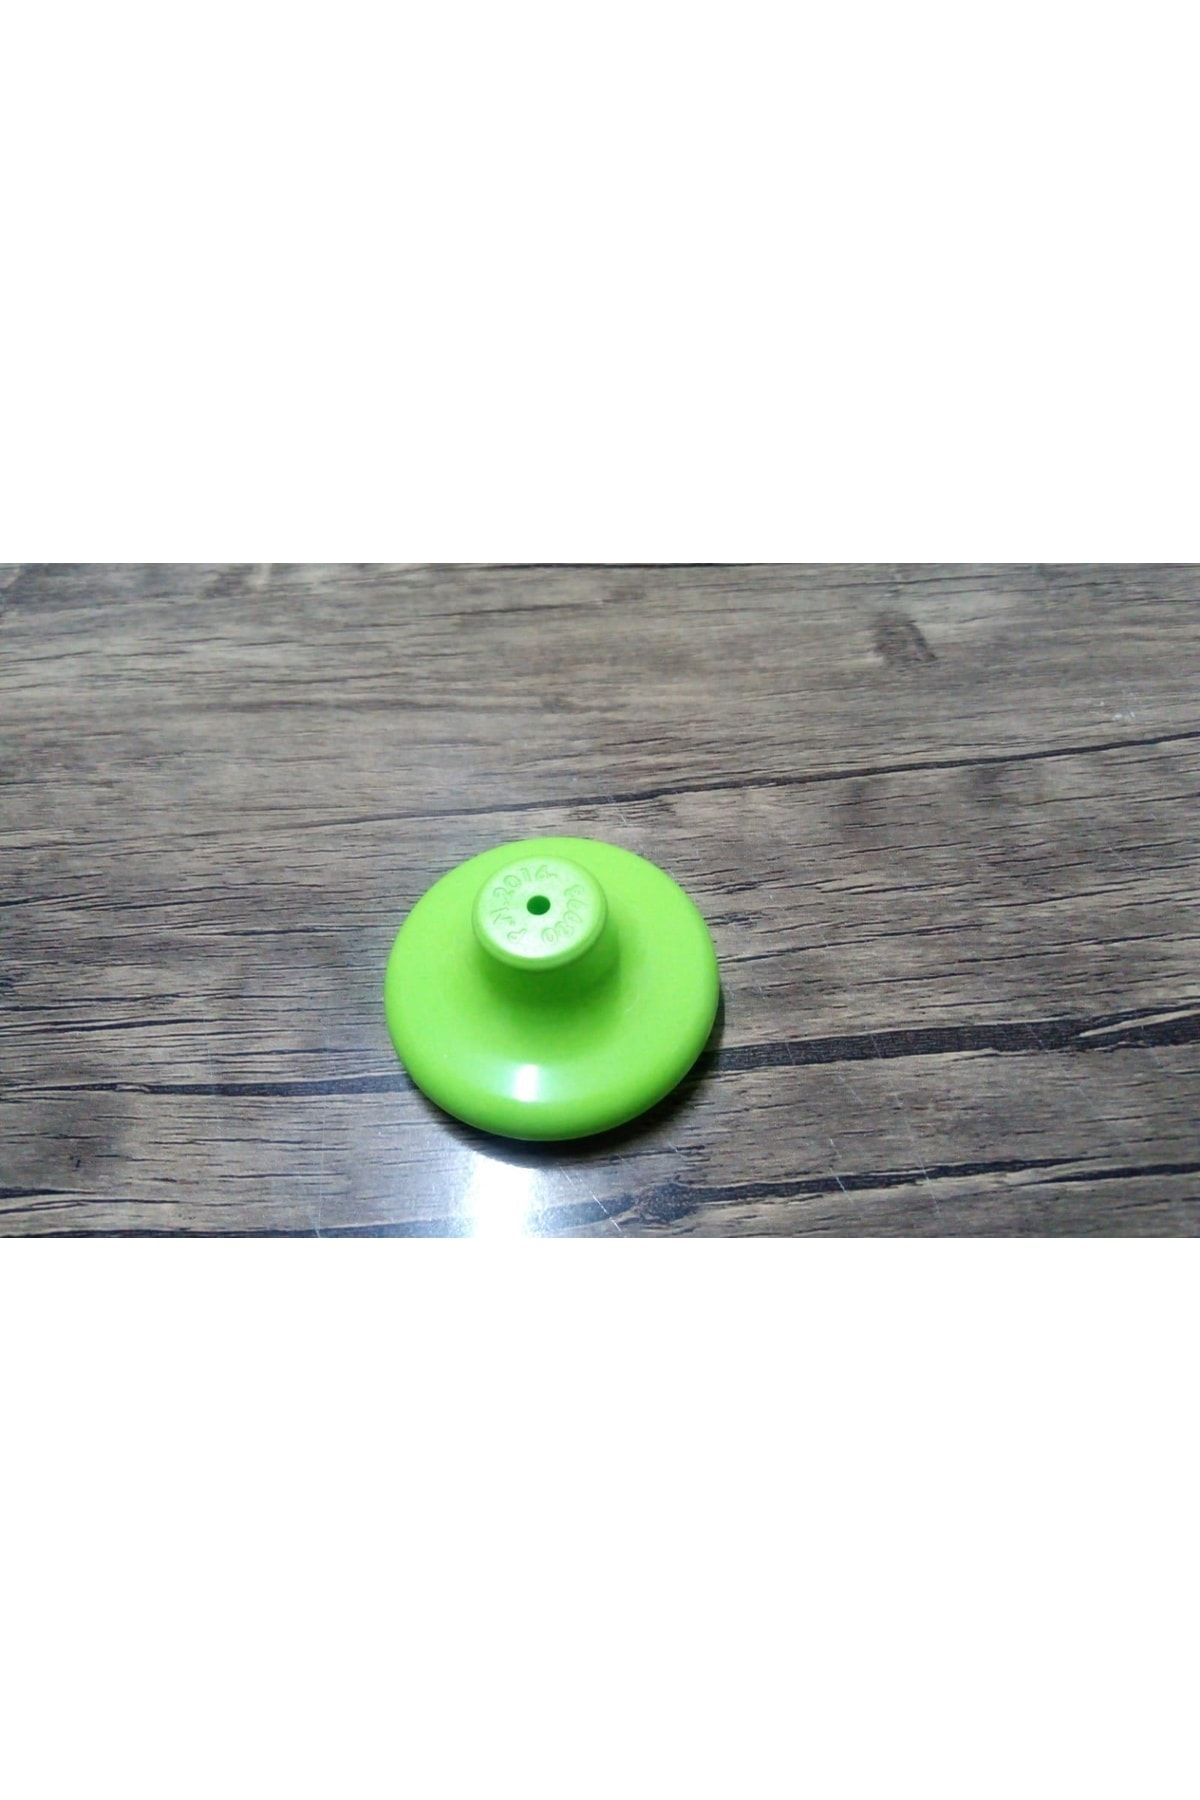 Eren Kardeşler Hırdavat Plastik Yeşil Dolap ,çekmece Düğmesi 55 Mm 1 Adet (sert Plastik)